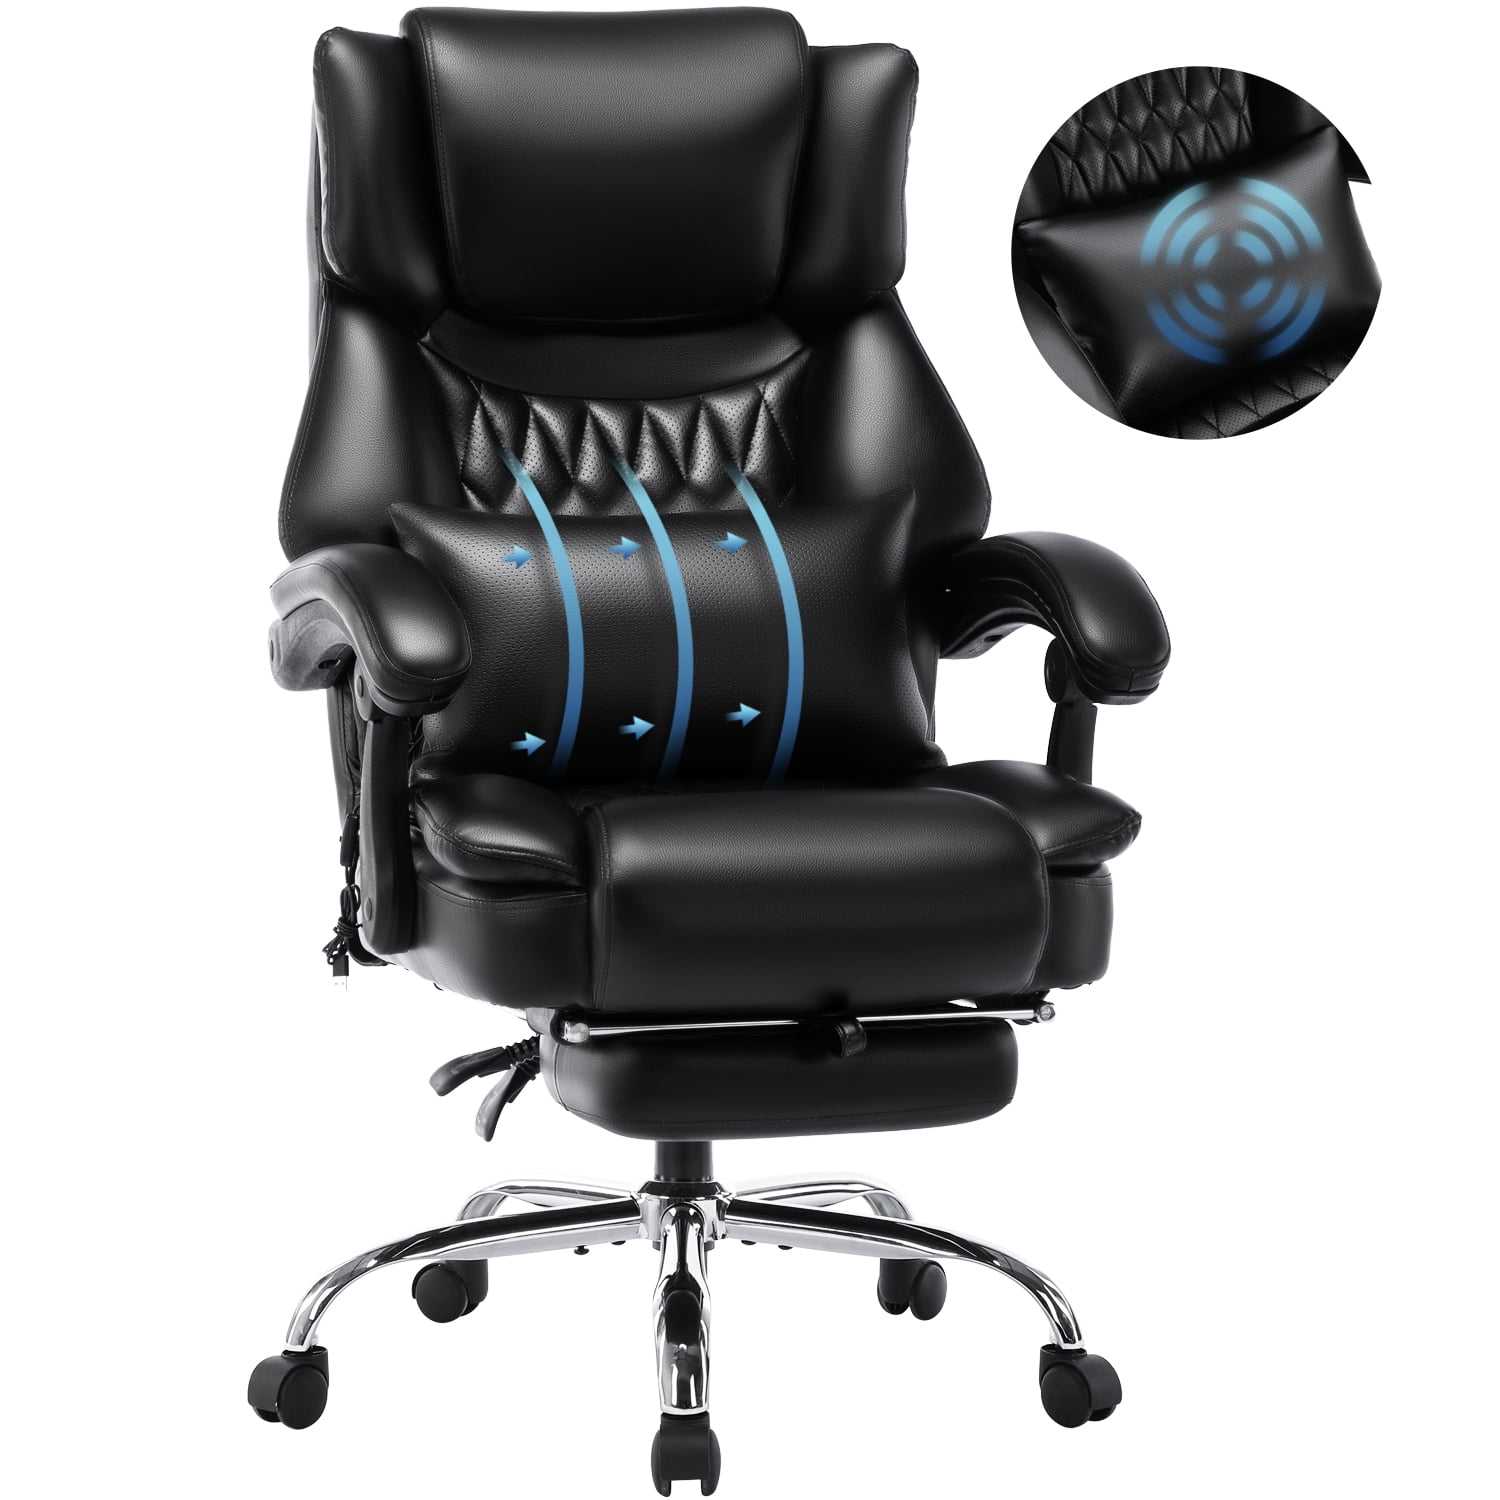 Home Office Chair Foot Rest Modern Leg Rest Design Mesh Waterproof Office  Chair Comfortable Cadeira Gamer Furniture JW50GY - AliExpress